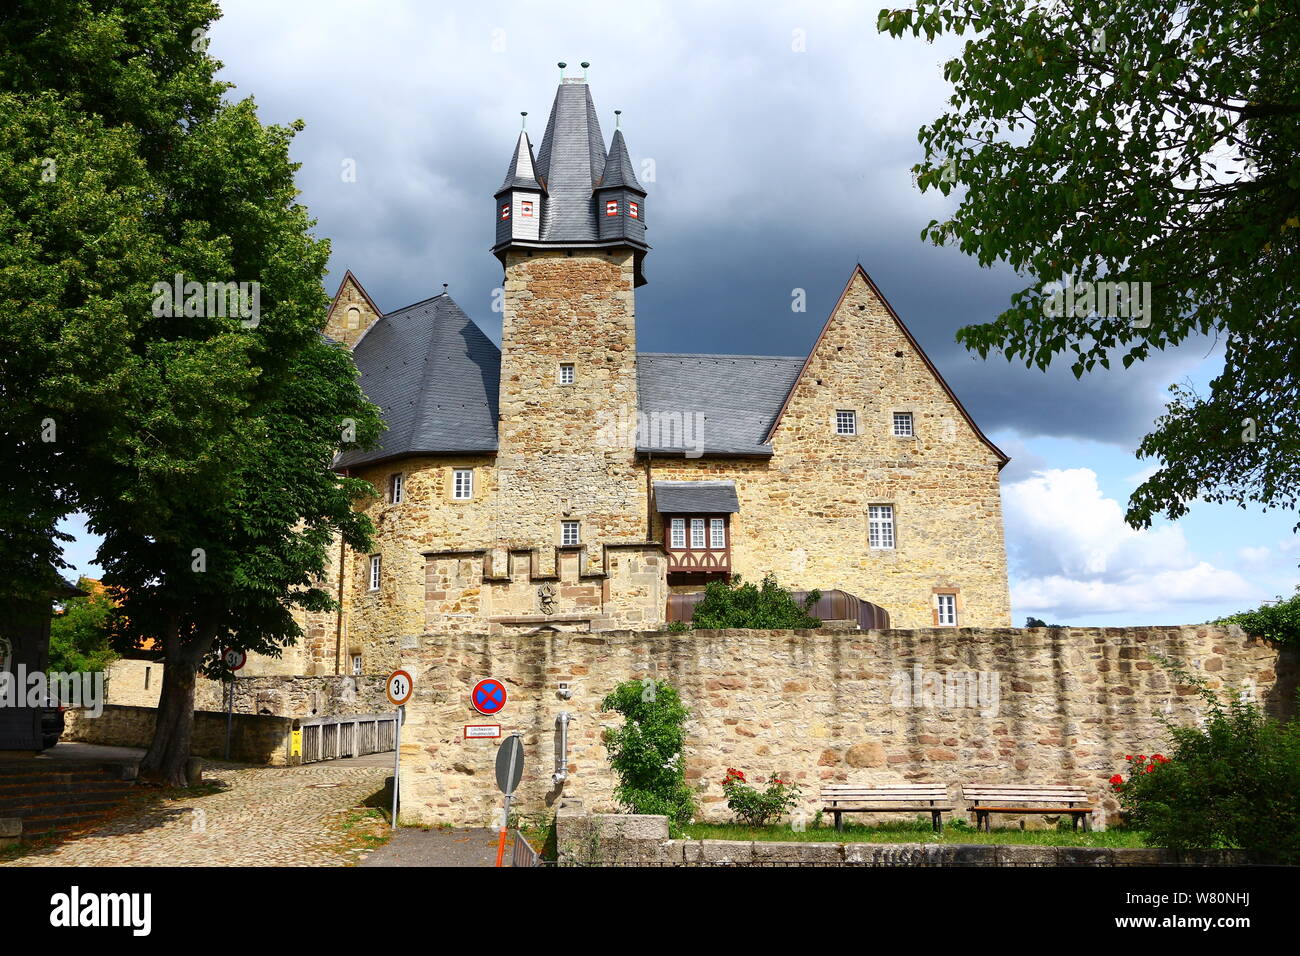 Blick auf das Schloss Spangenberg in Nordhessen Stock Photo